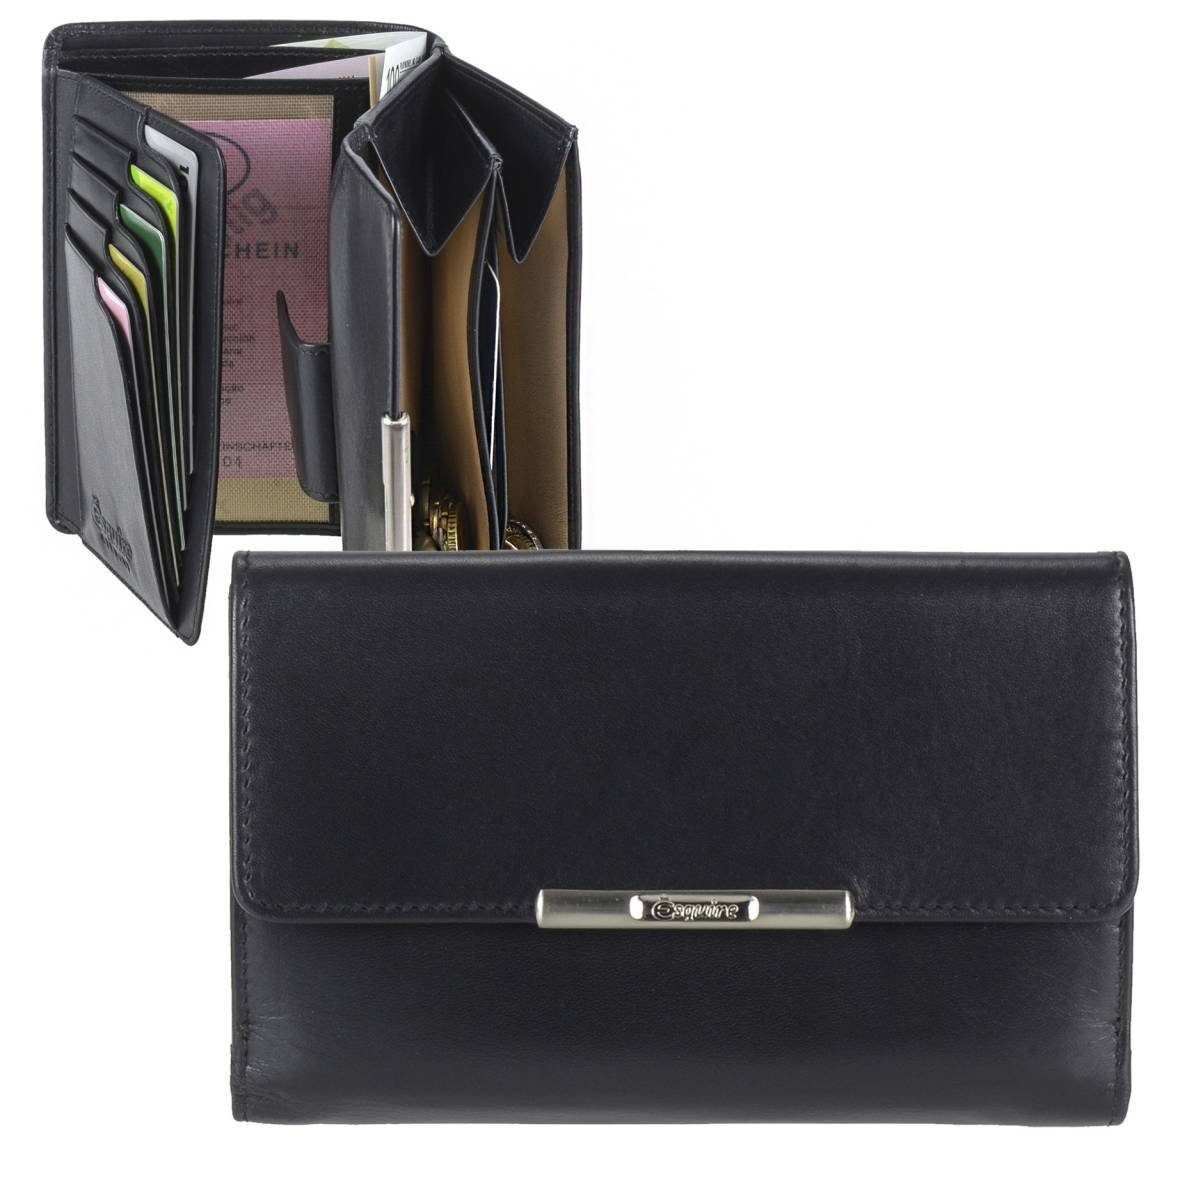 Esquire Geldbörse Helena, Portemonnaie, mit RFID Schutz gegen Datendiebstahl, 15 Kartenfächer